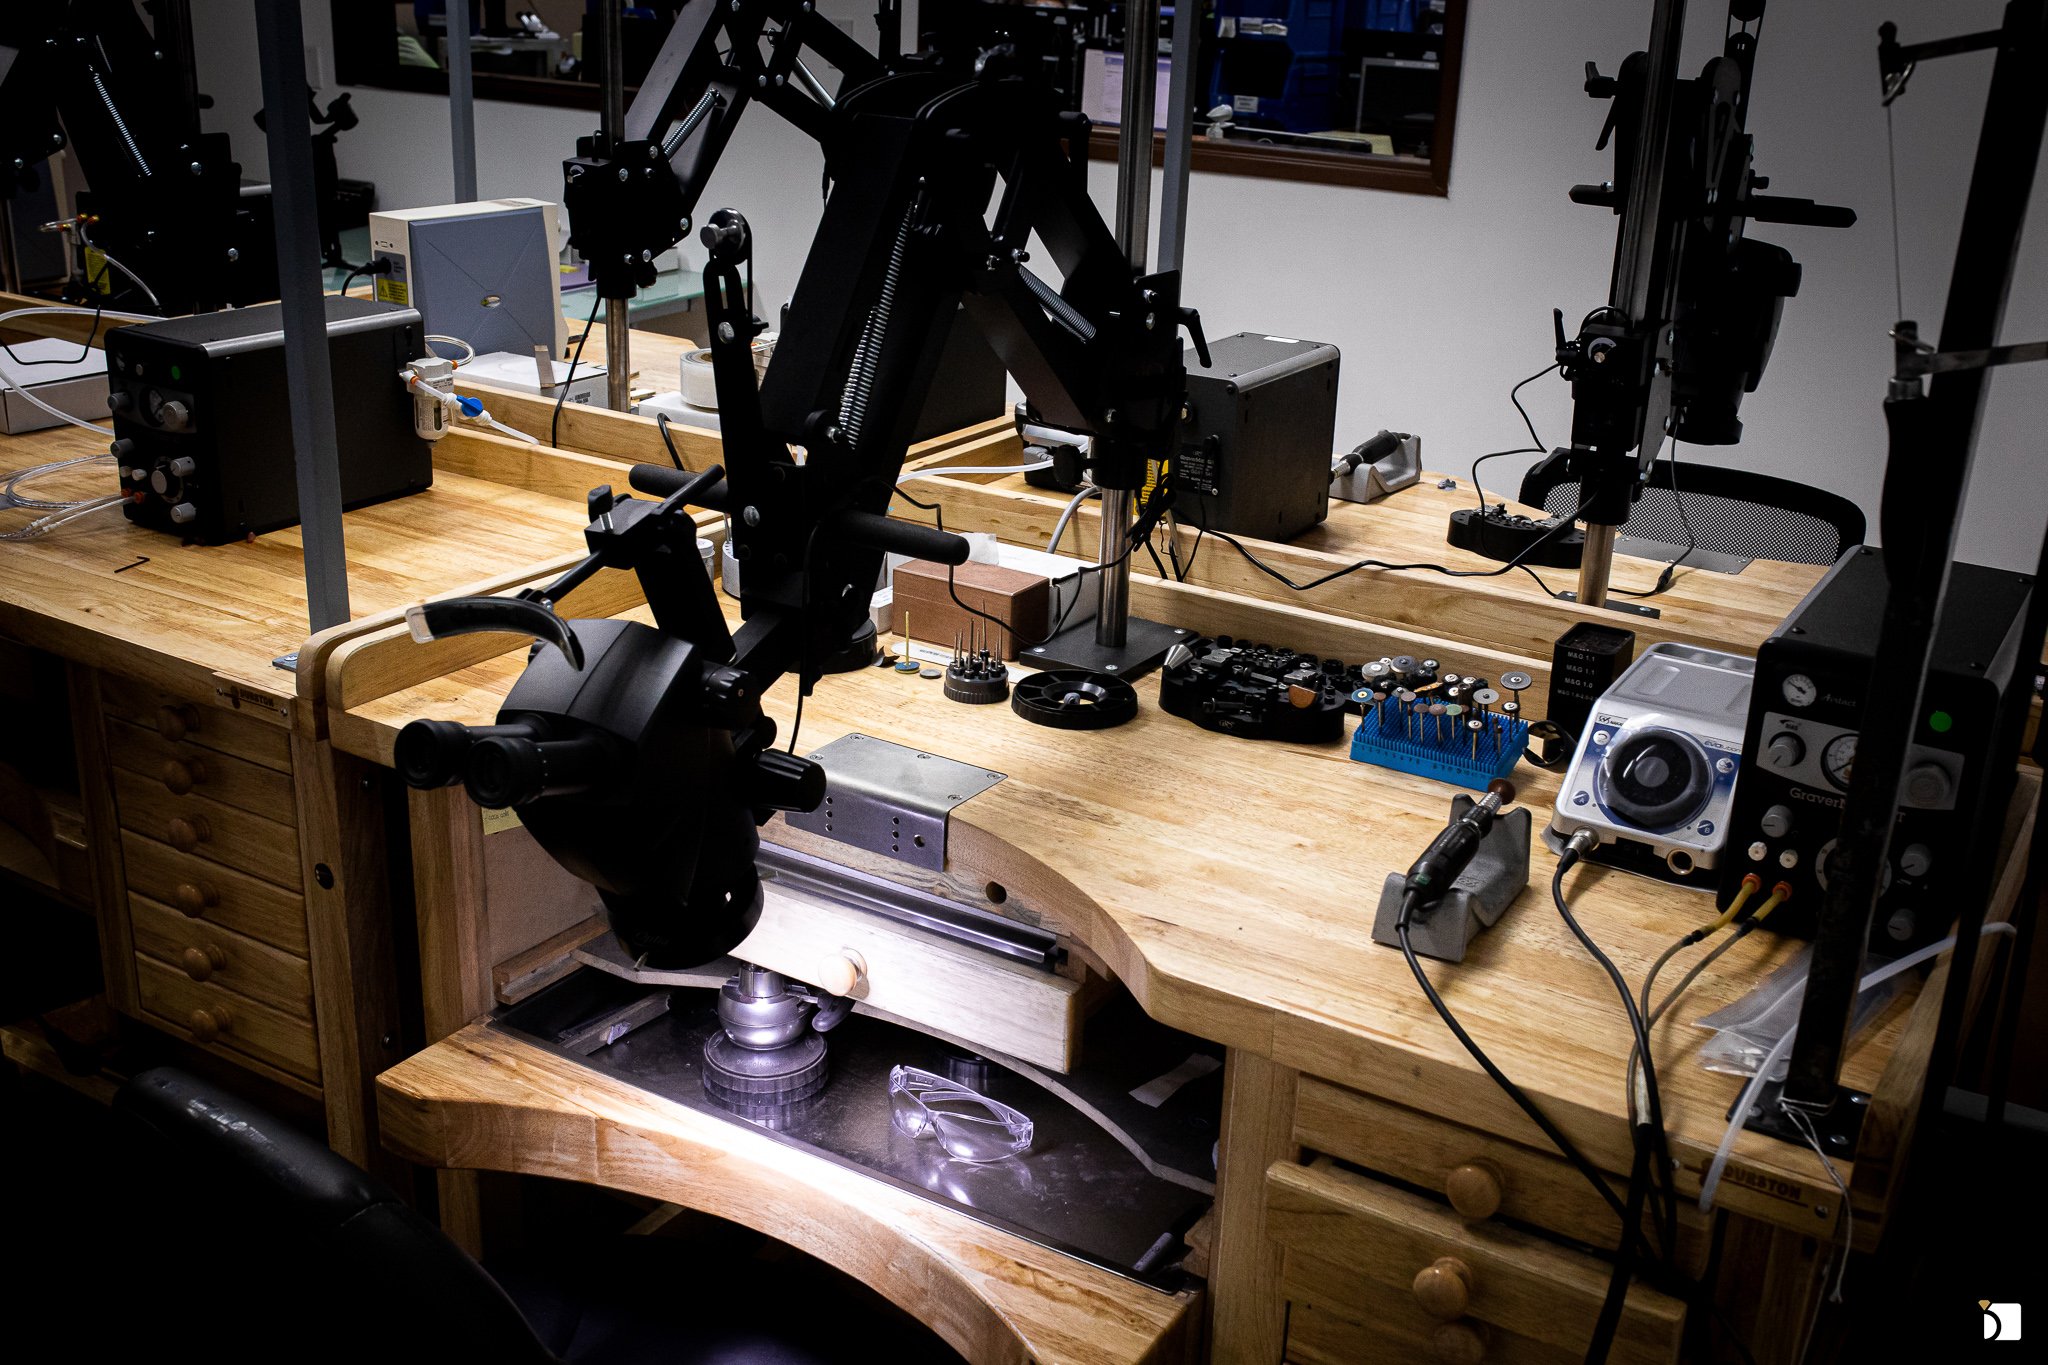 Image of gemstone setting lab microscopes